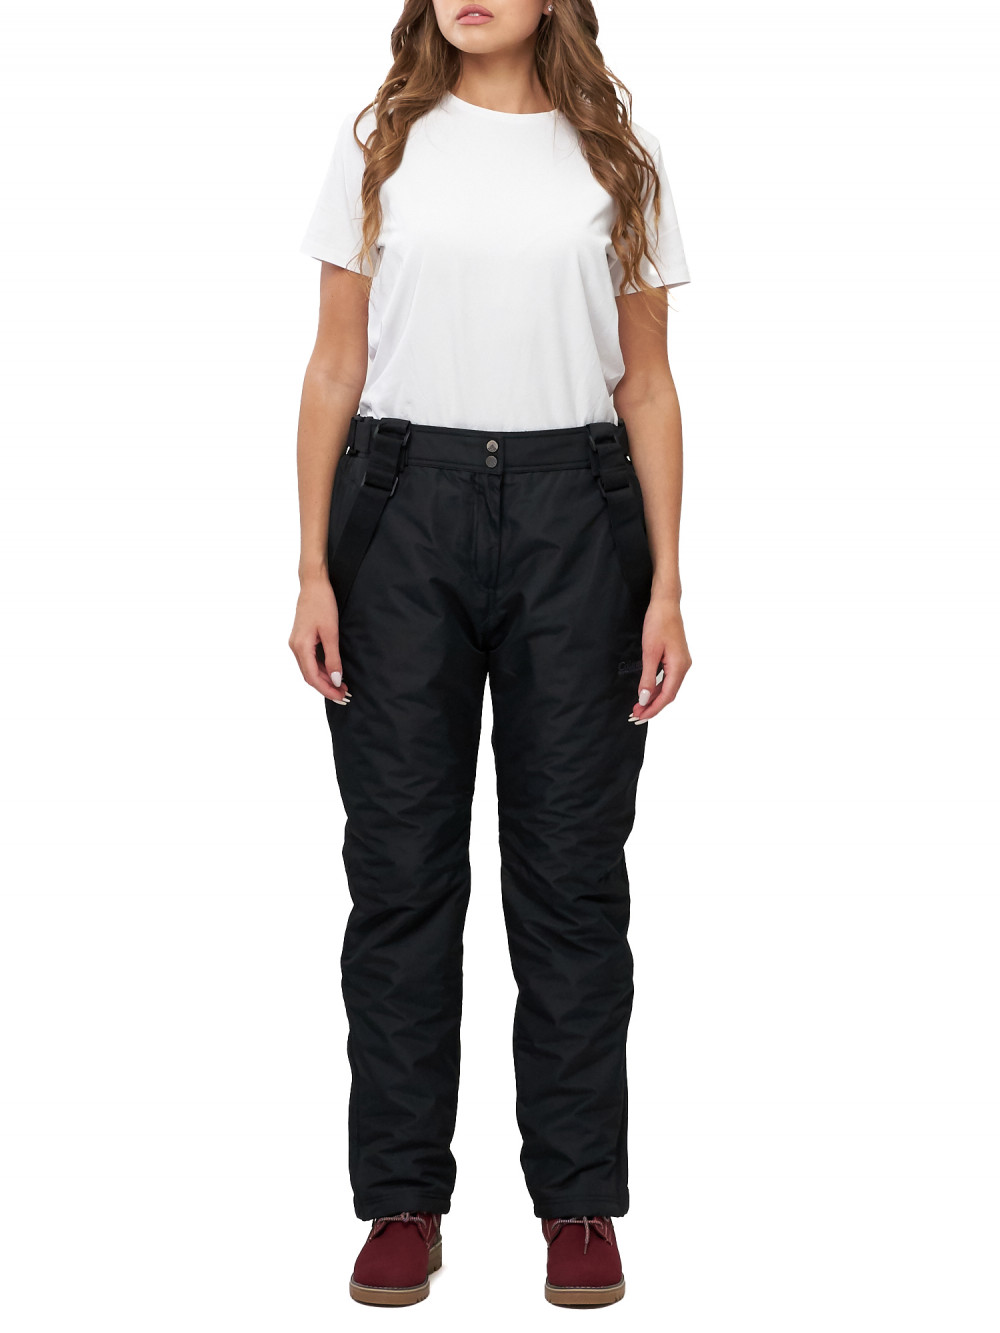 Полукомбинезон брюки горнолыжные женские big size AD66413Ch черного цвета, 50